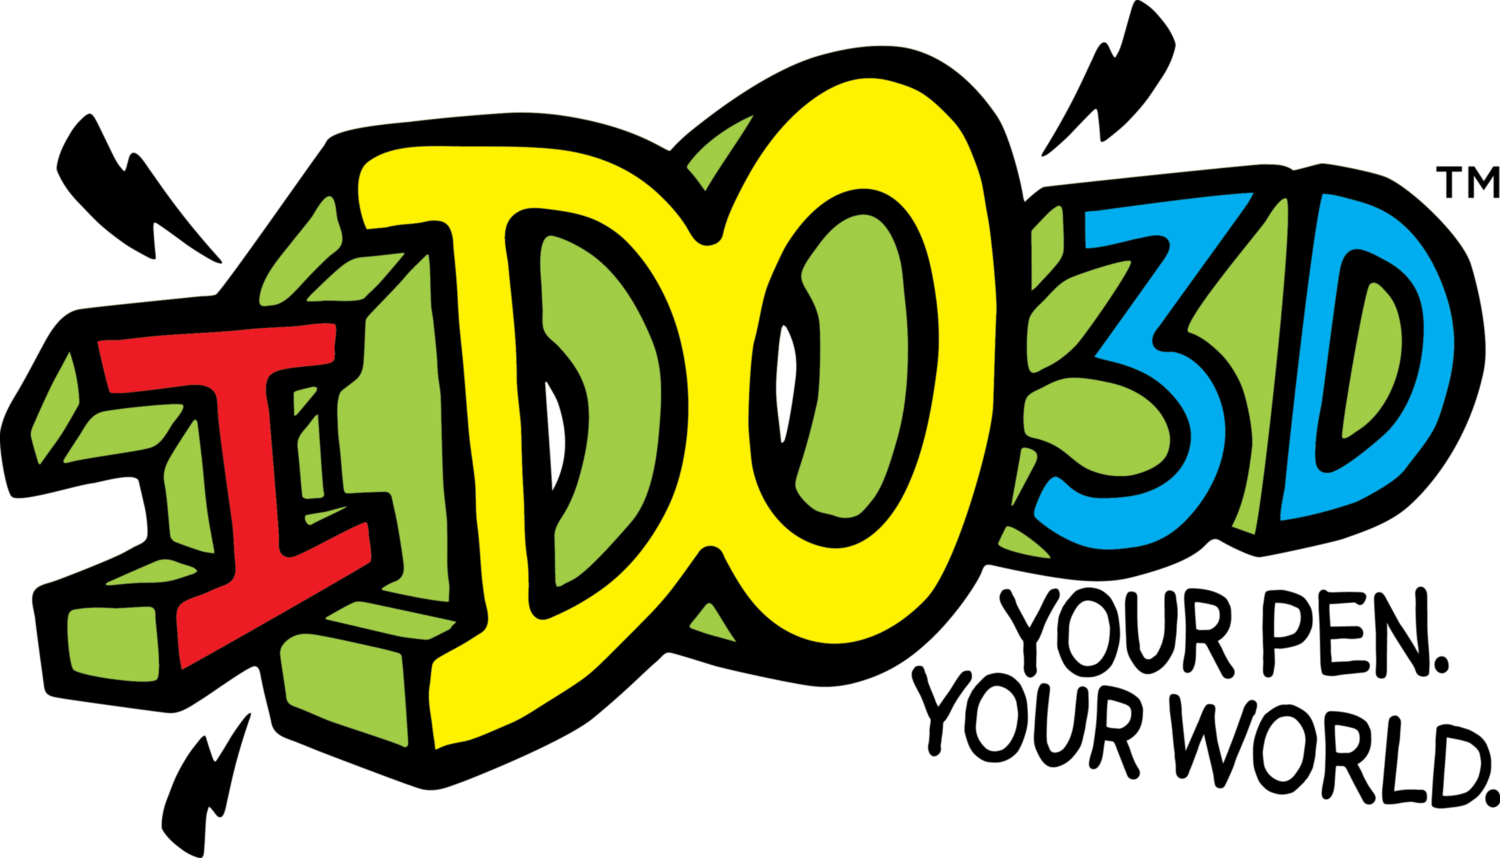 Ido3d - 3d Pen Logo (1500x858)